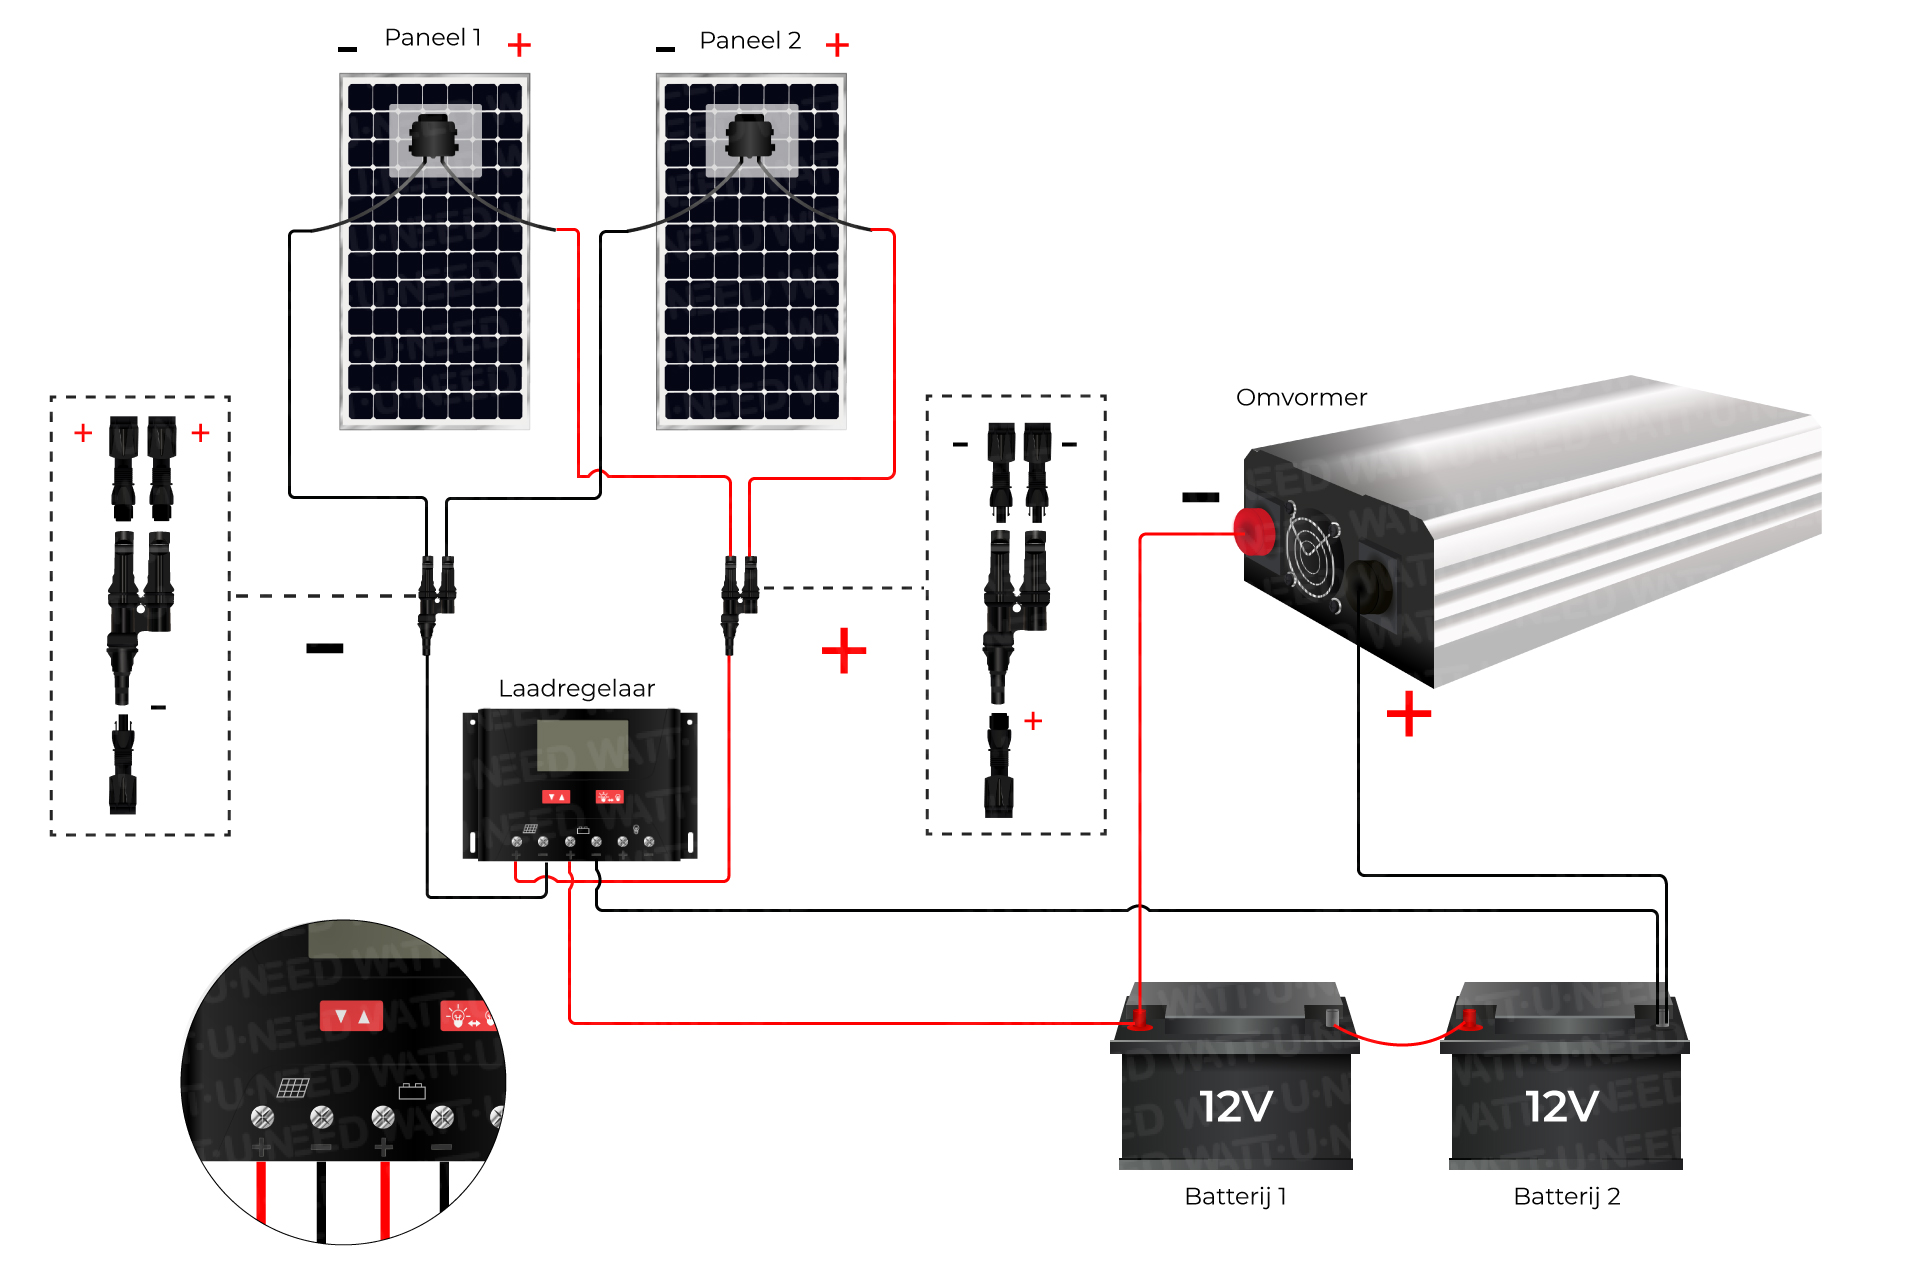 een stand-alone zonnepakket van 24 V monteren